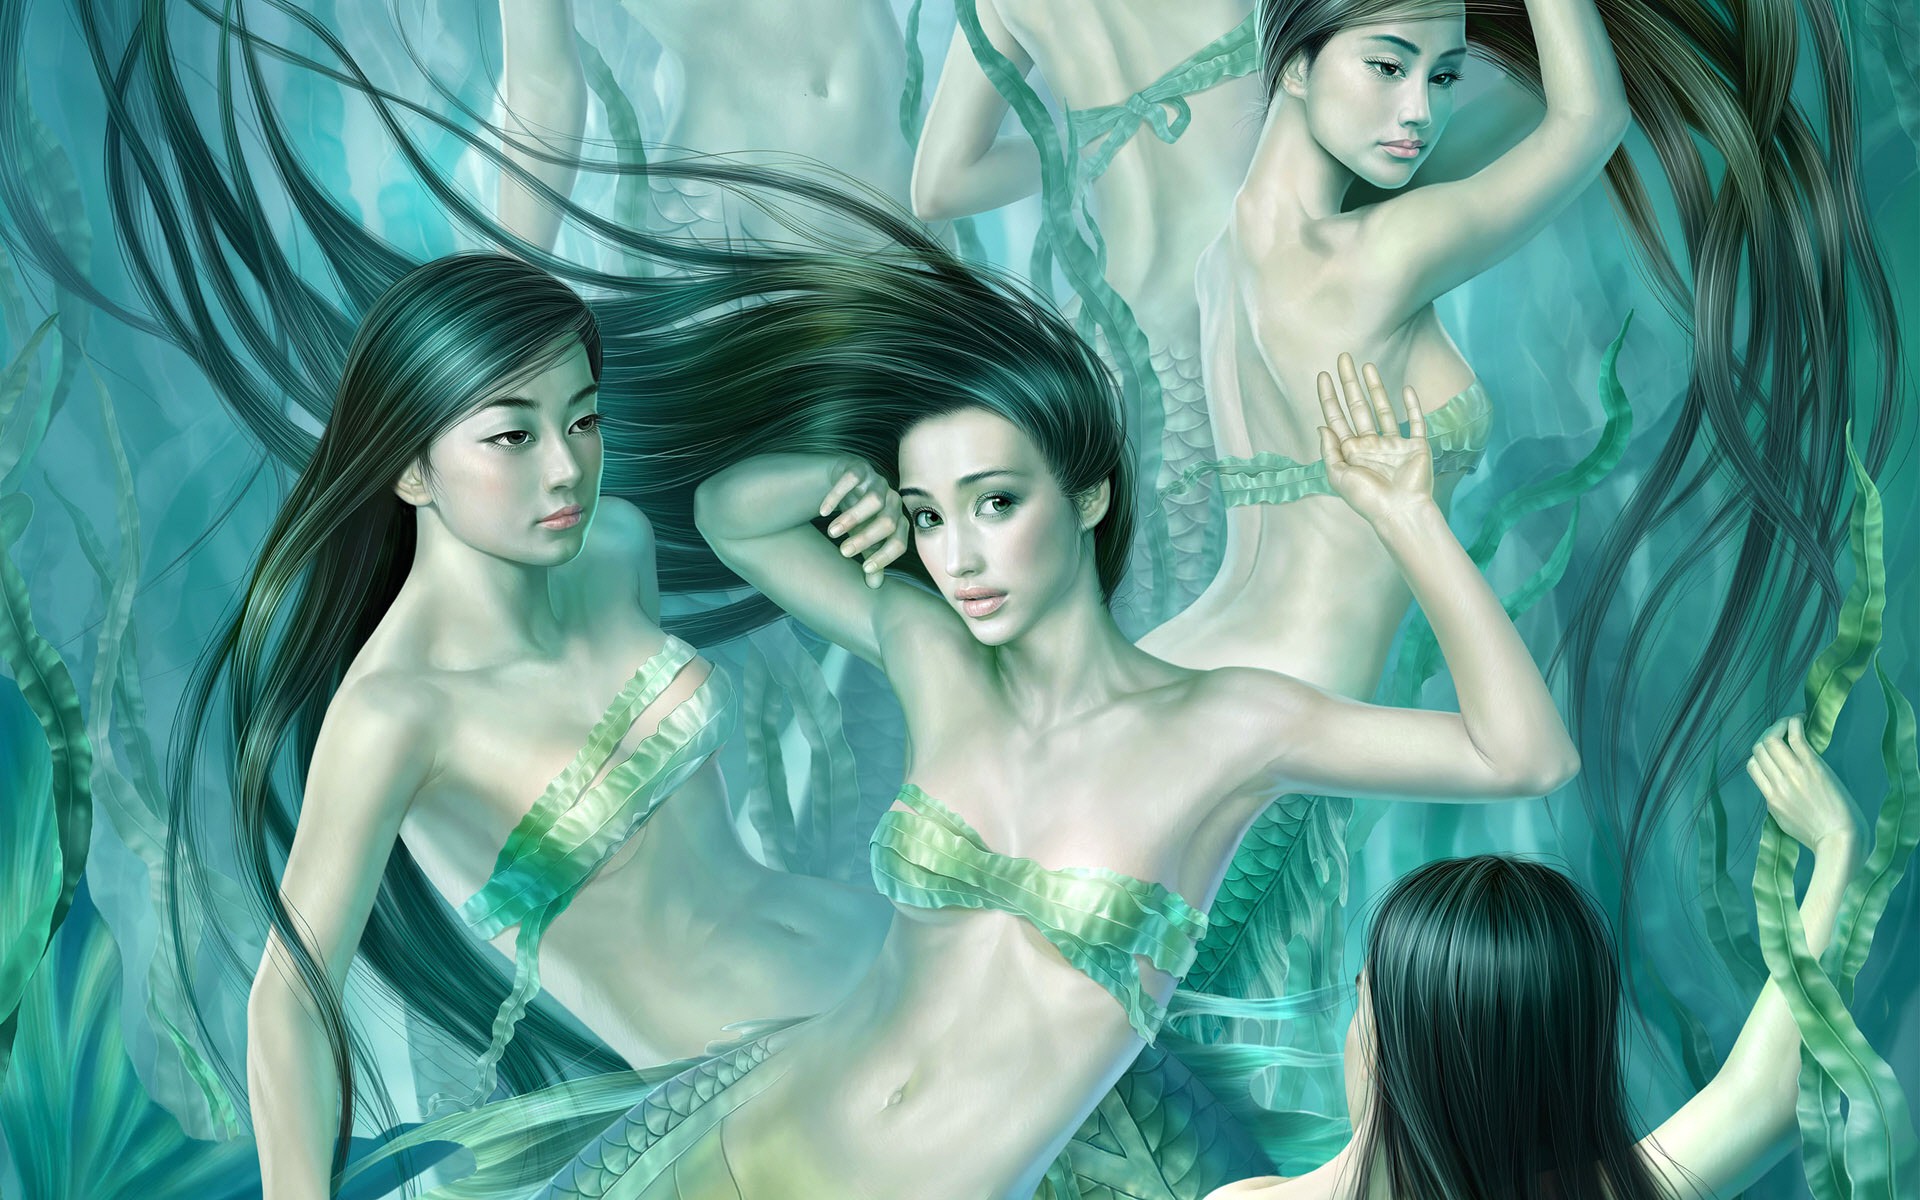 General 1920x1200 mermaids fantasy girl group of women women dark hair long hair fantasy art boobs belly underwater looking at viewer